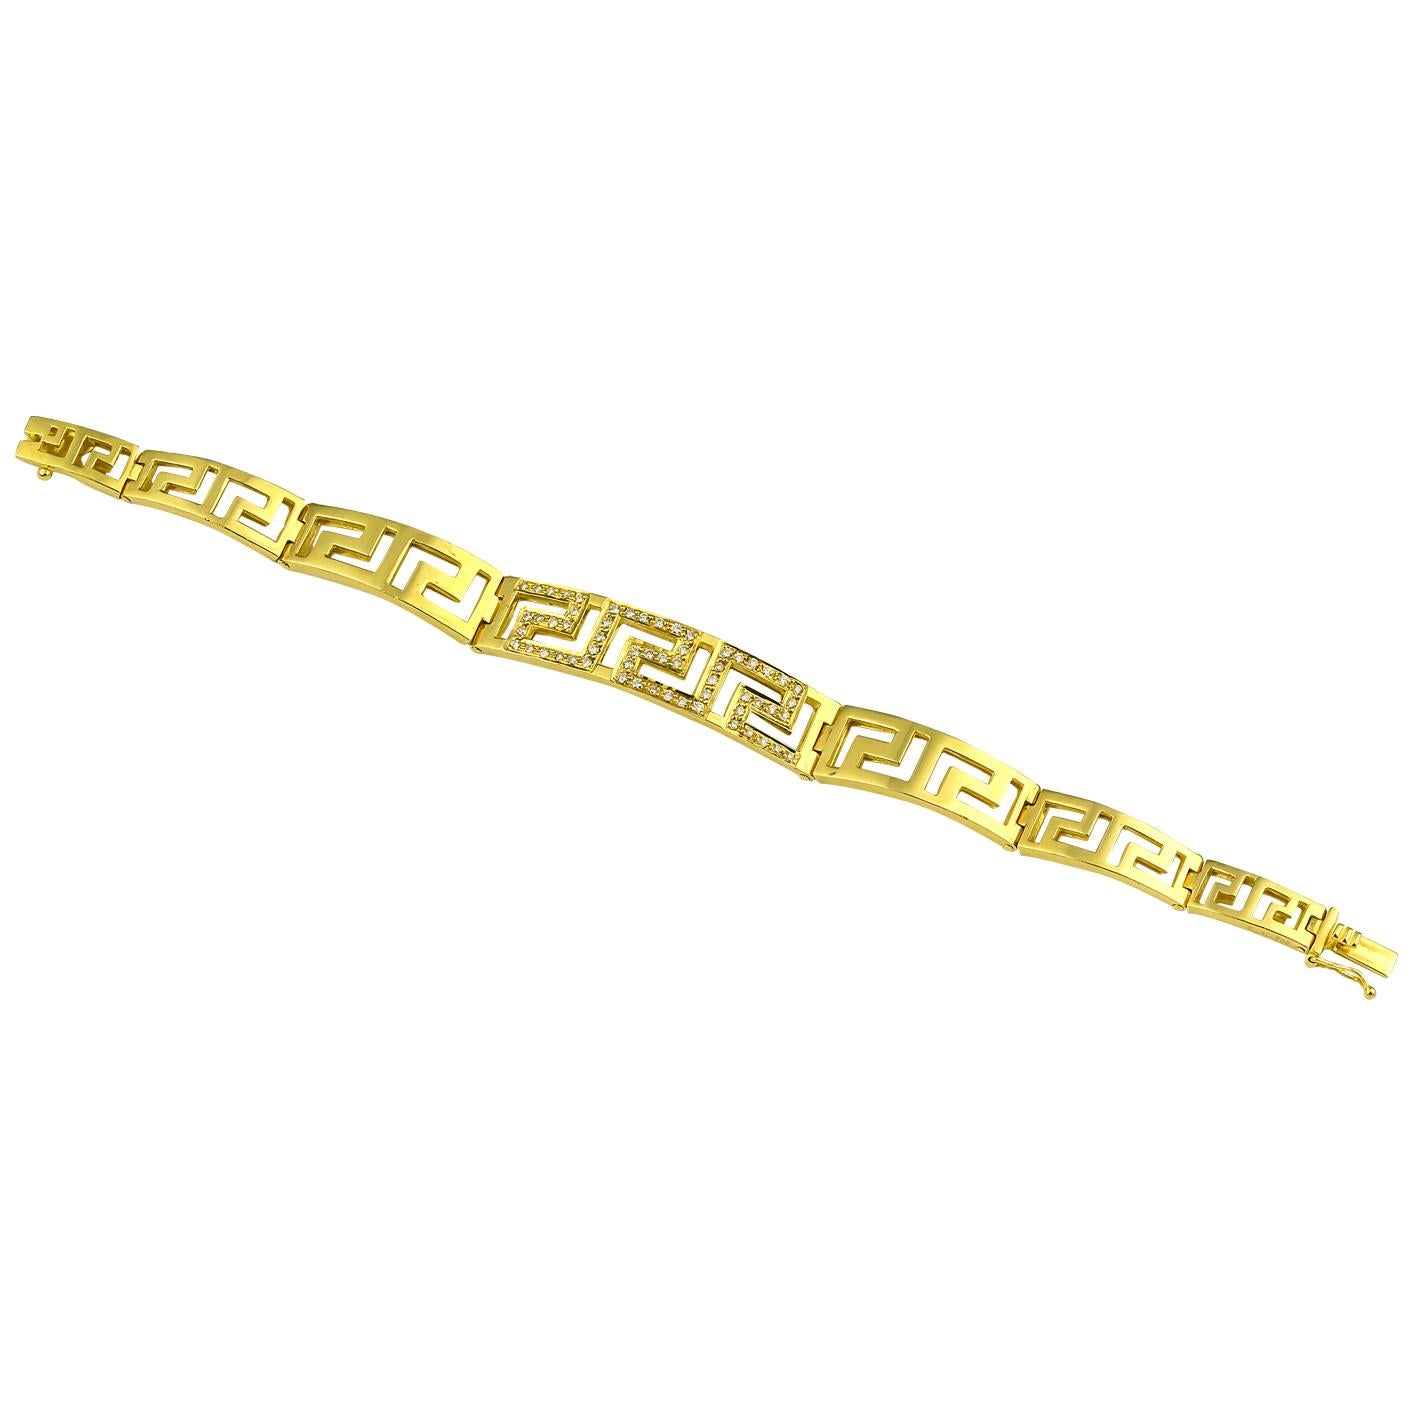 S.Georgios Designer-Armband Greek Key aus massivem Gelbgold 18 Karat, handgefertigt mit dem griechischen Schlüssel, dem Symbol des ewigen Lebens. Das Armband ist maßgefertigt und hat weiße Diamanten im Brillantschliff mit einem Gesamtgewicht von